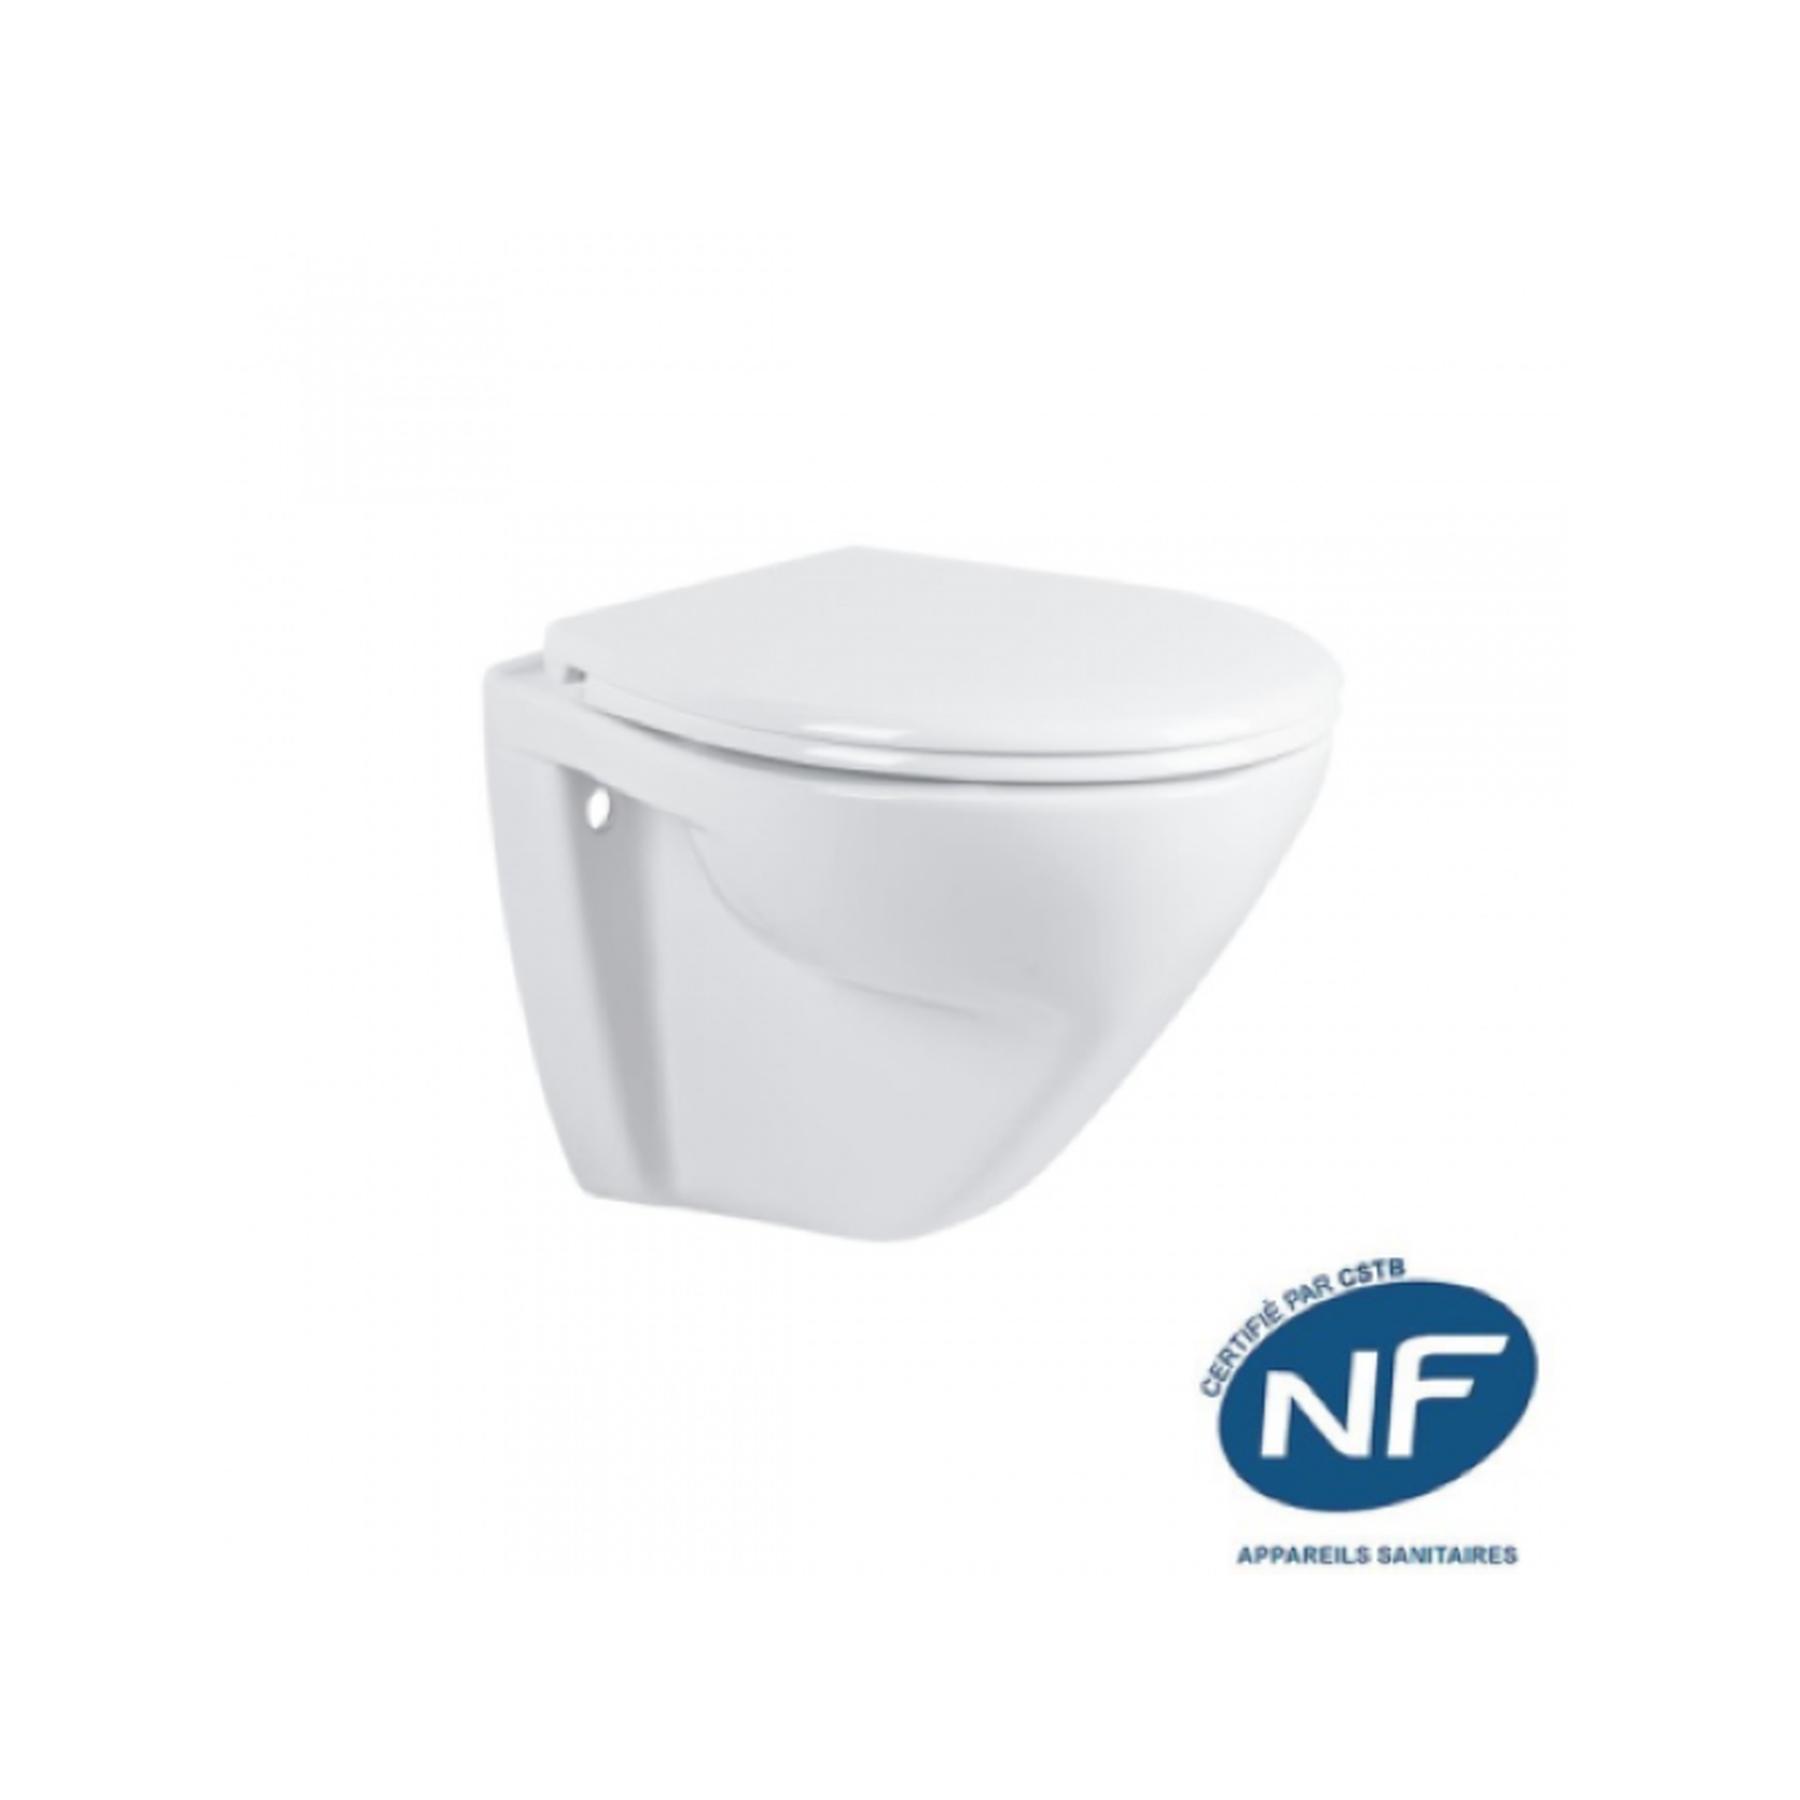 Cuvette de WC céramique traditionnelle Gamme PRO SANINDUSA suspendue NF Cetus couleur blanche (abattant non compris)